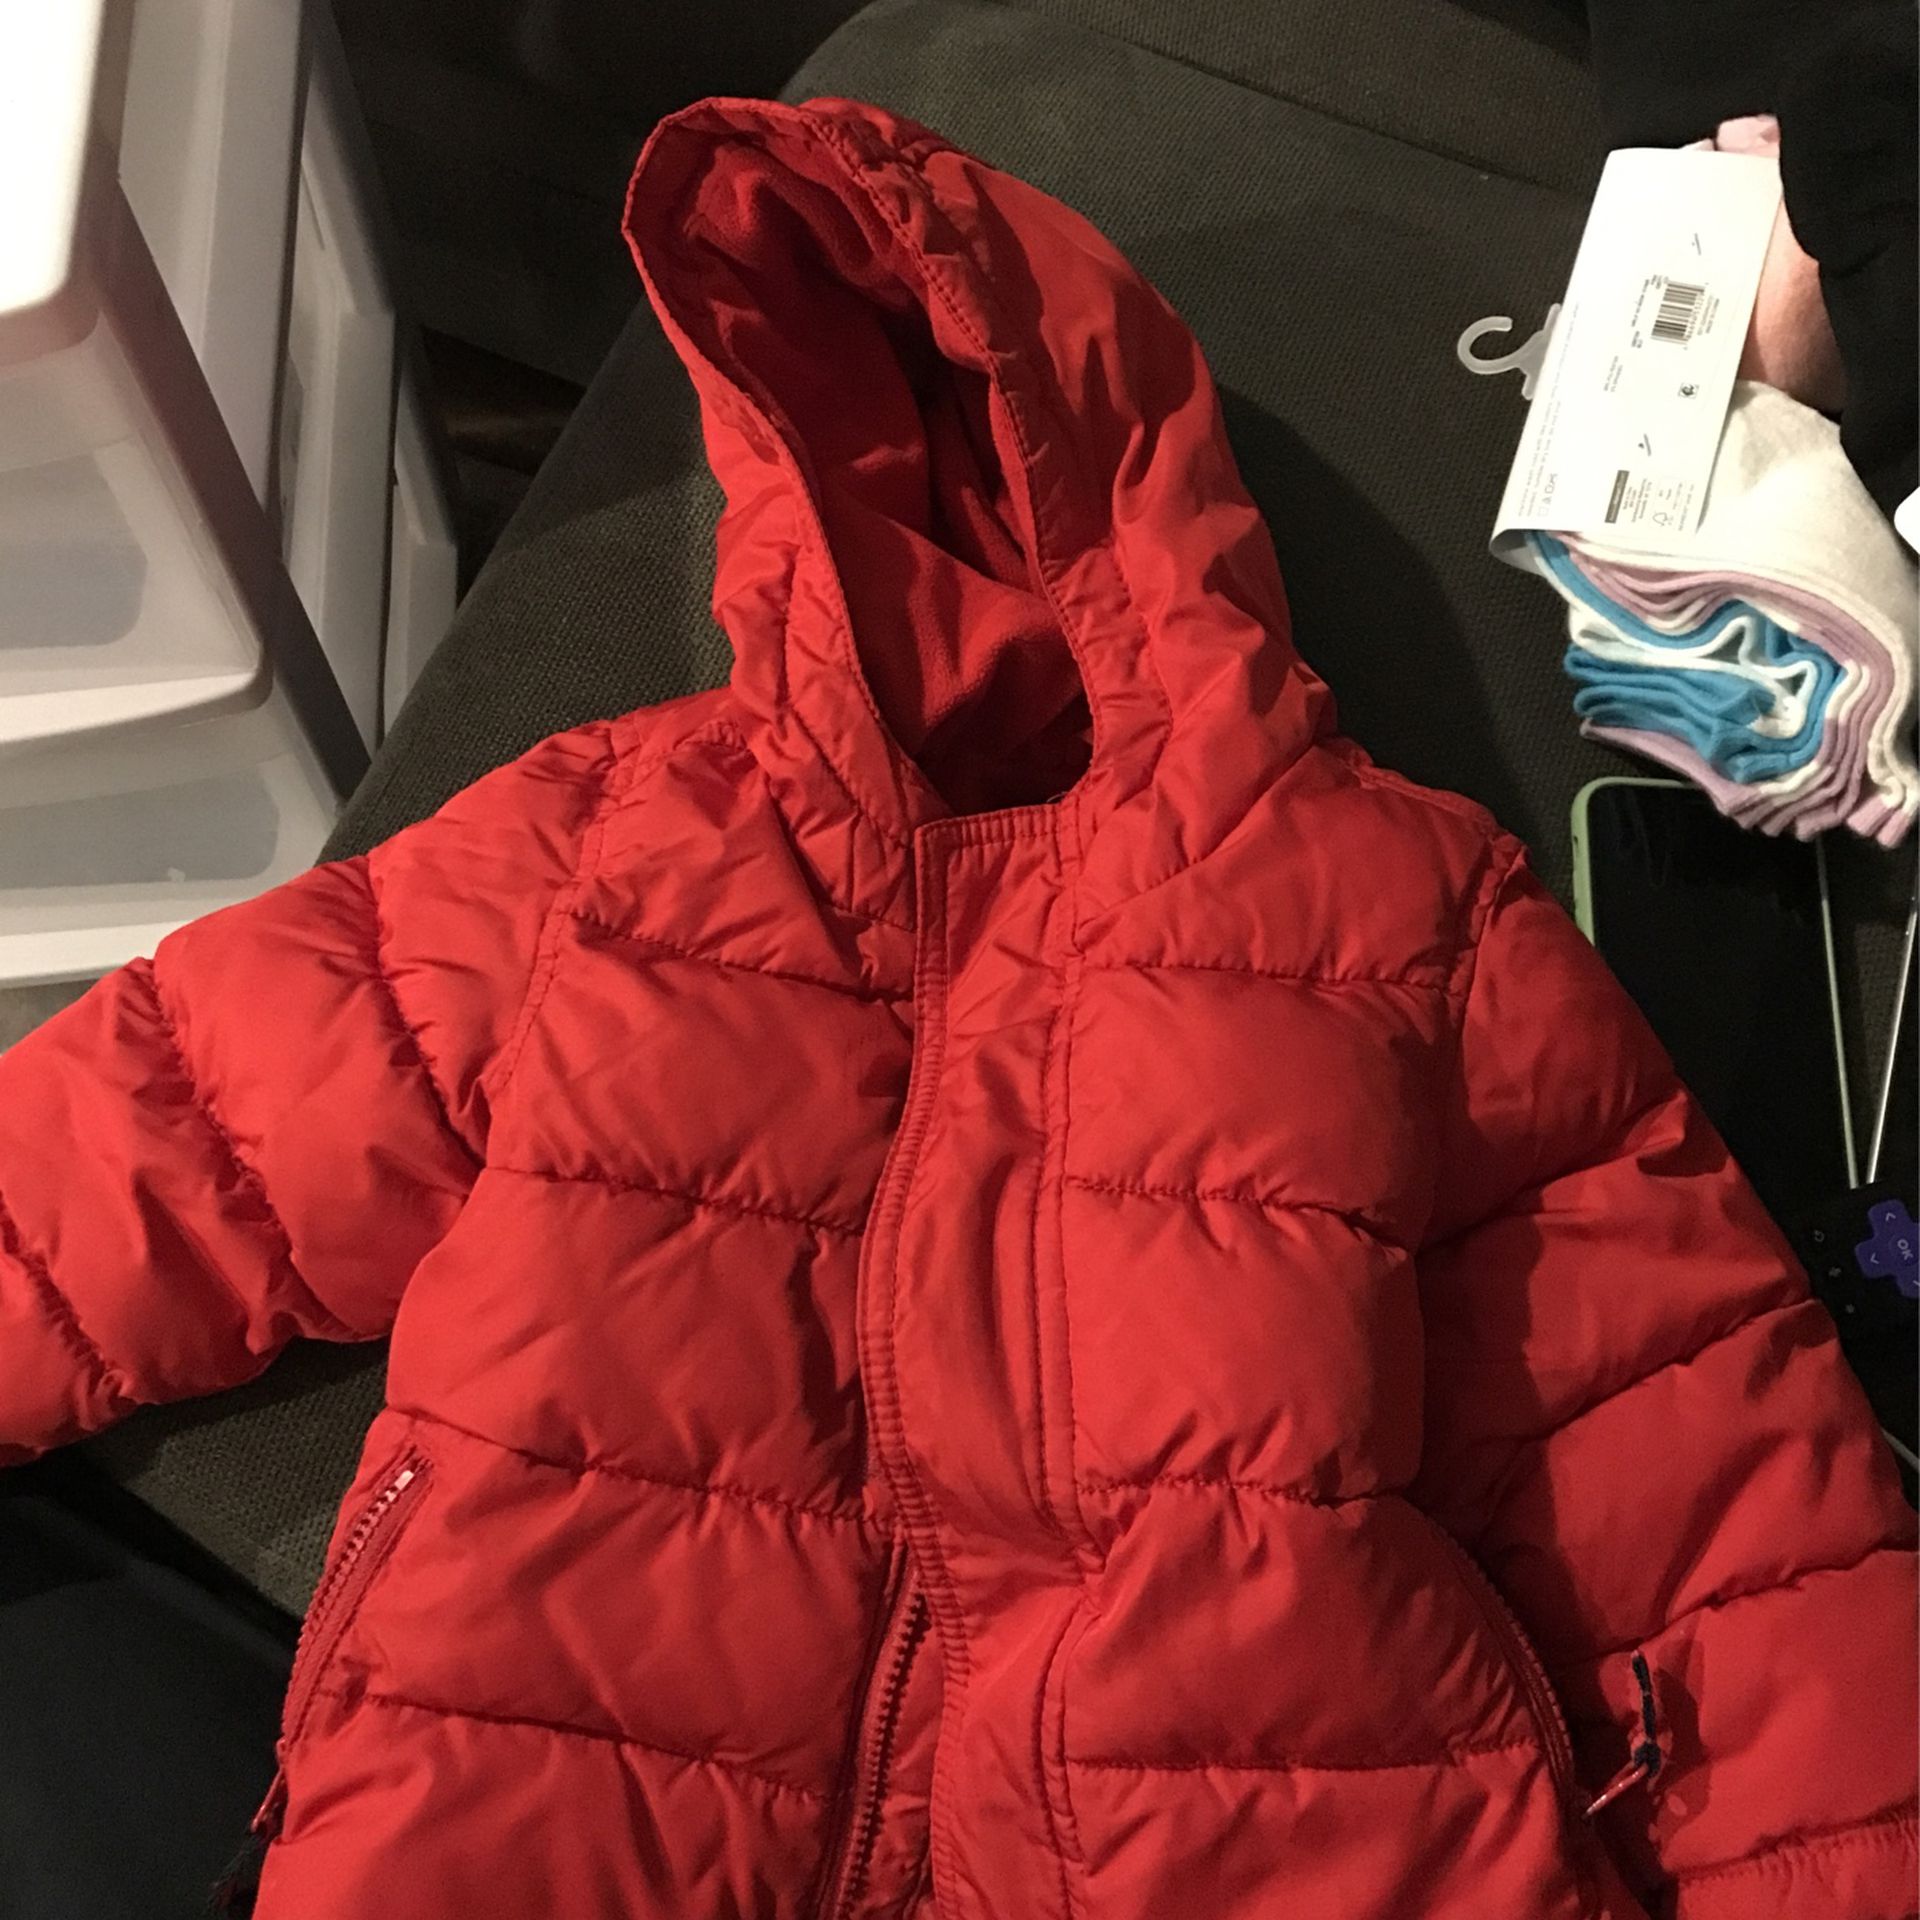 Toddler Winter Jacket